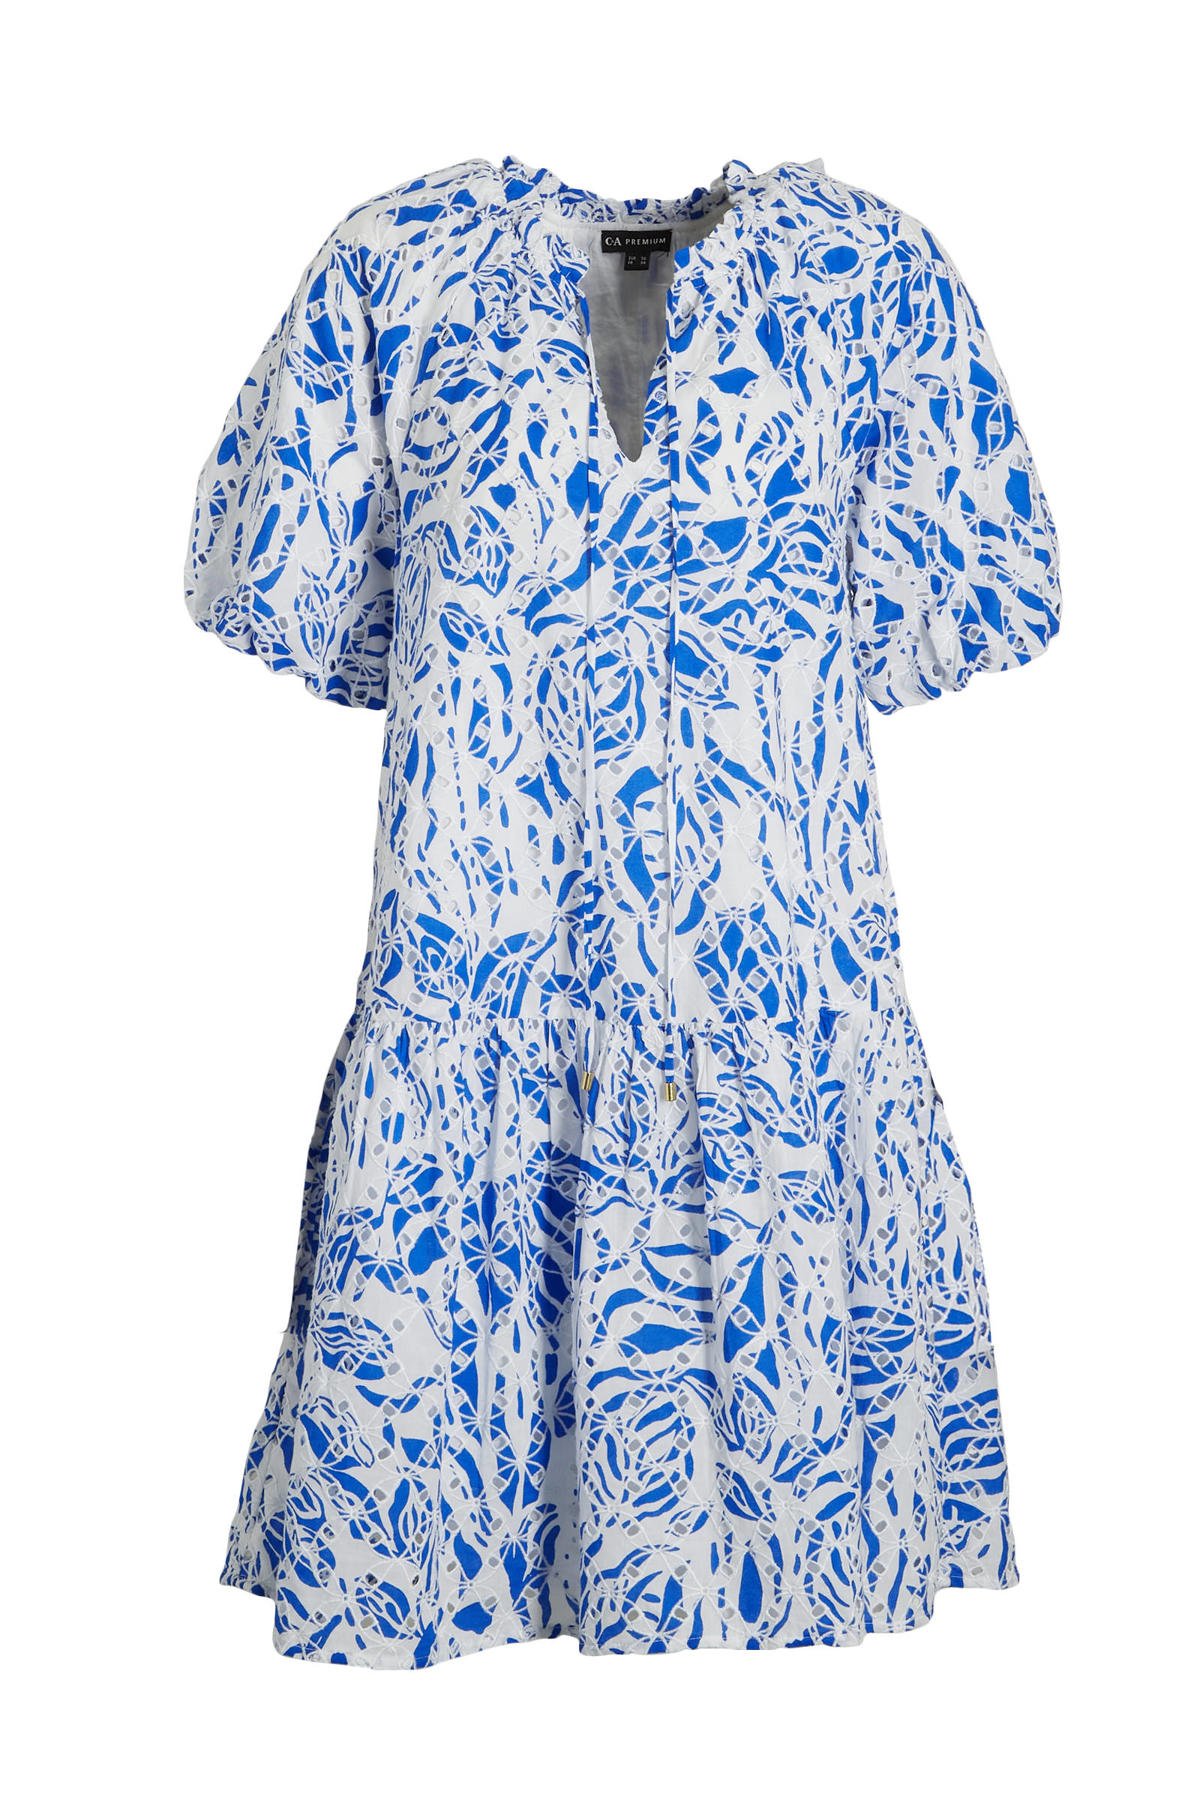 C&A jurk met all over print en blauw/wit | wehkamp